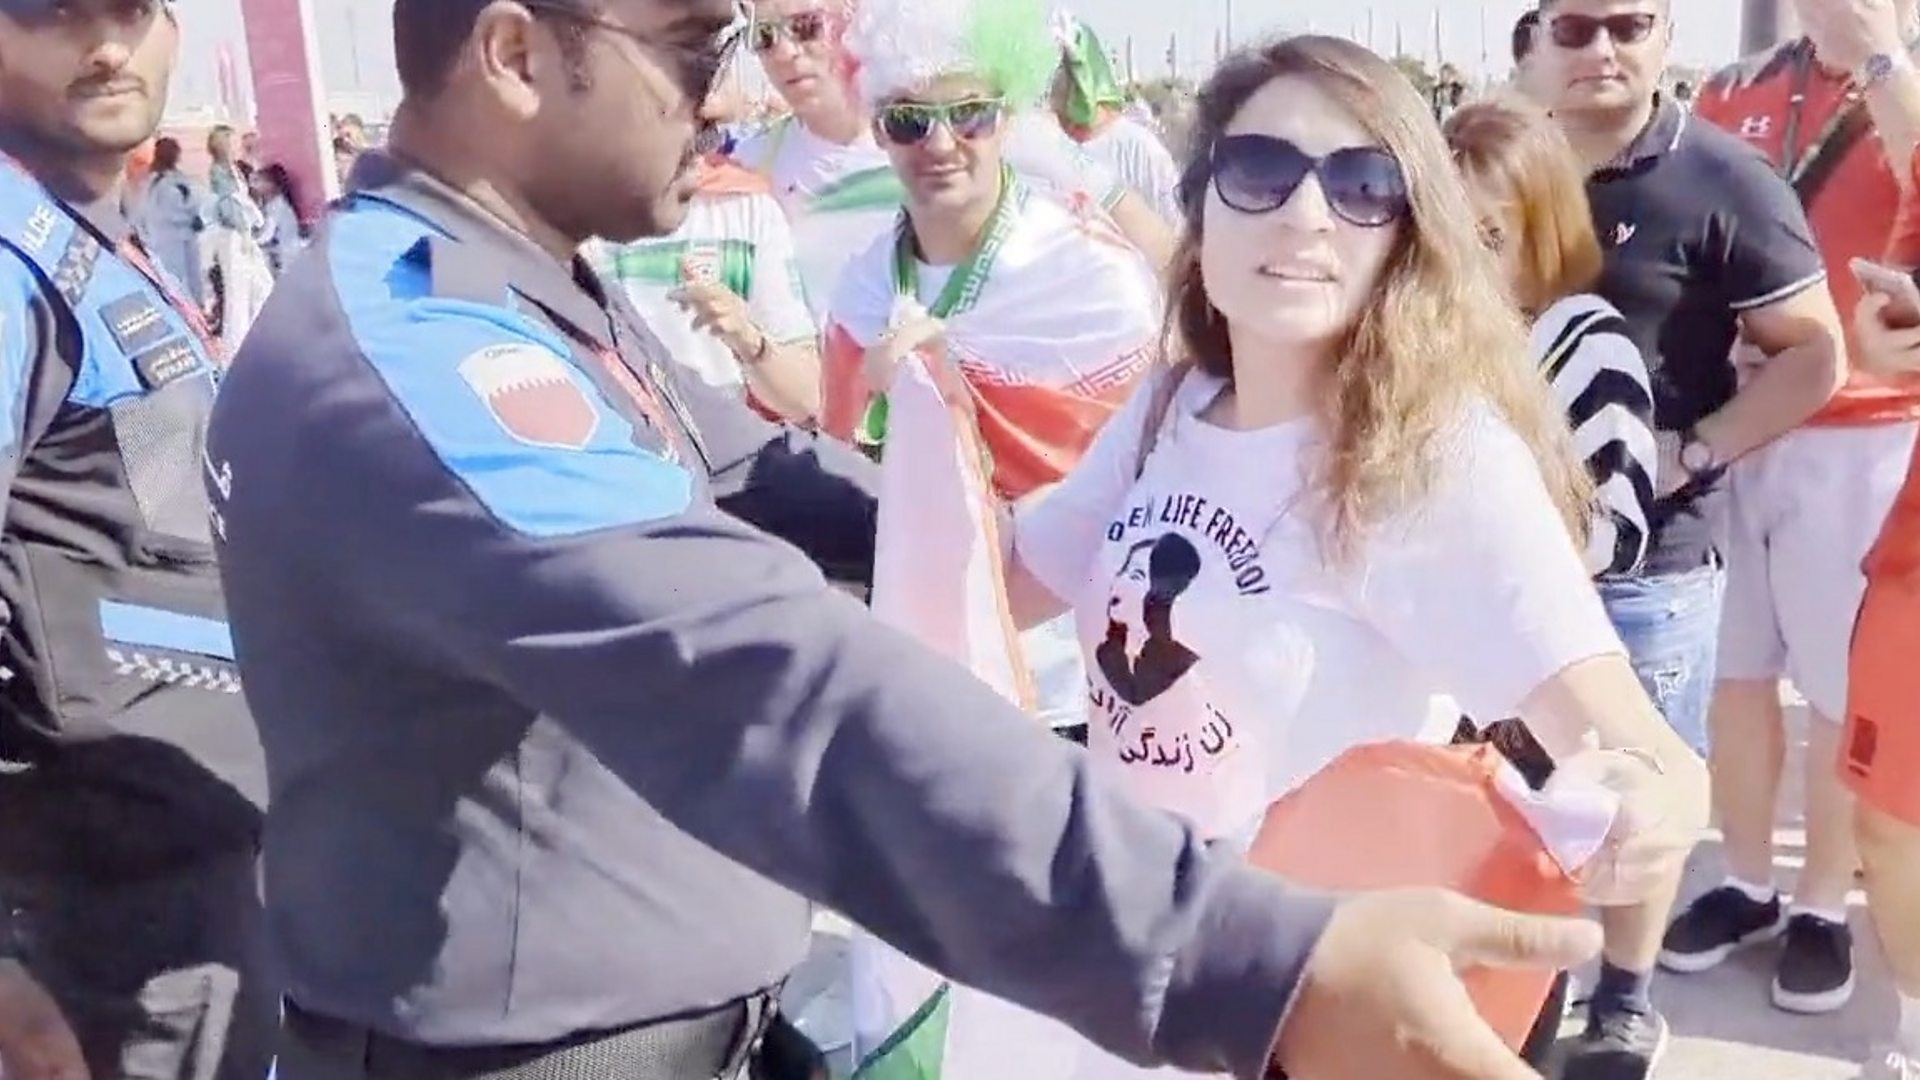 Woman wearing Mahsa Amini top stopped at World Cup